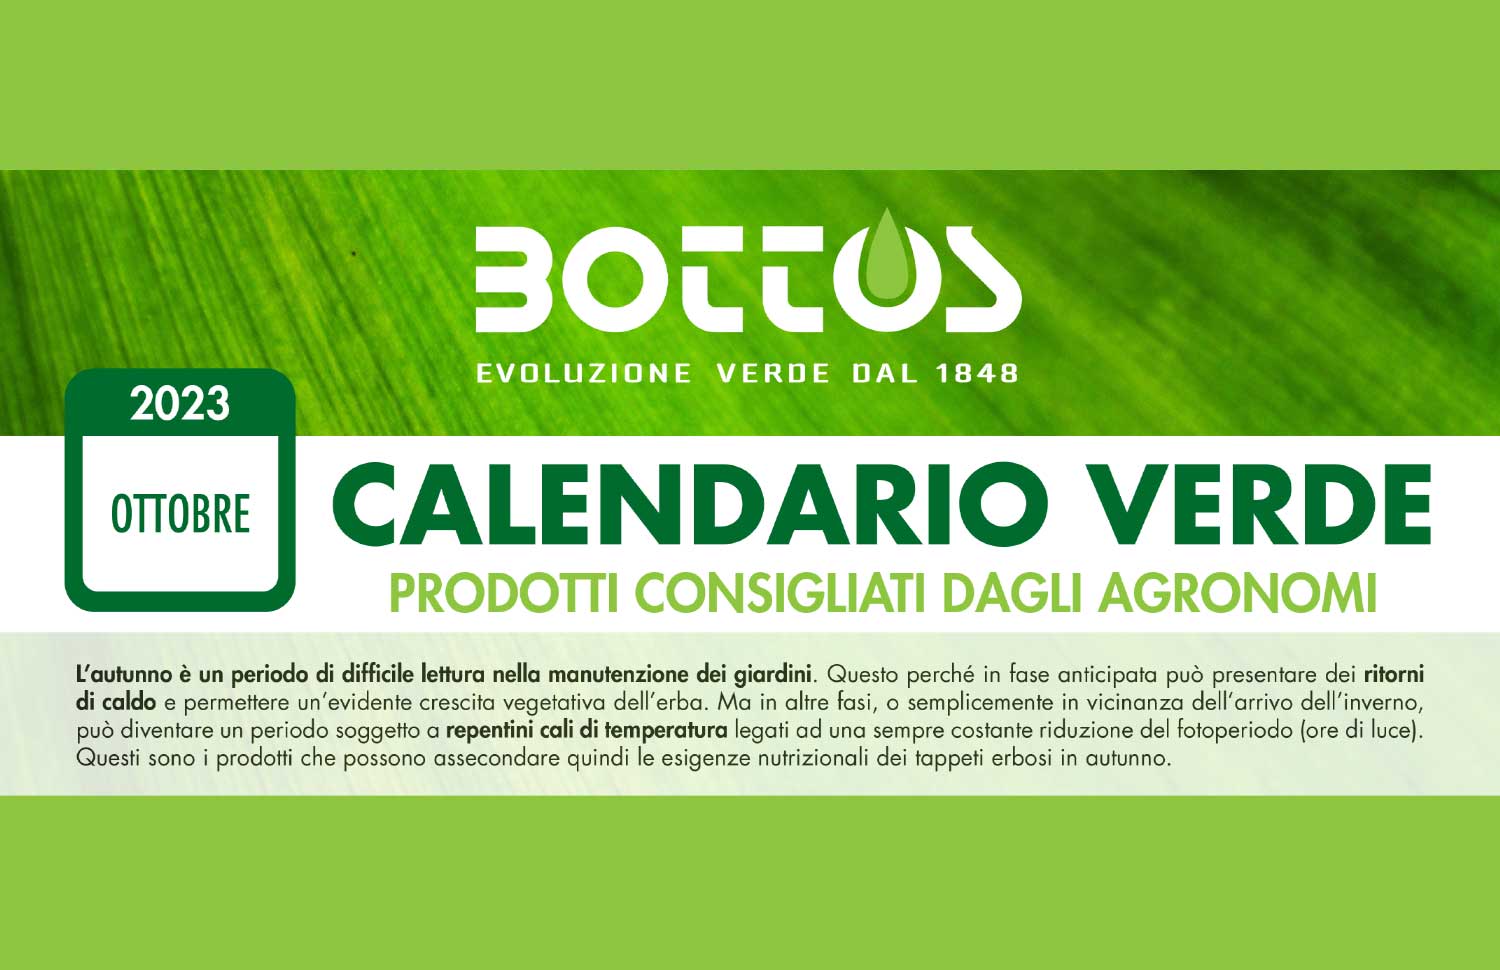 Calendario verde Bottos Ottobre 2023